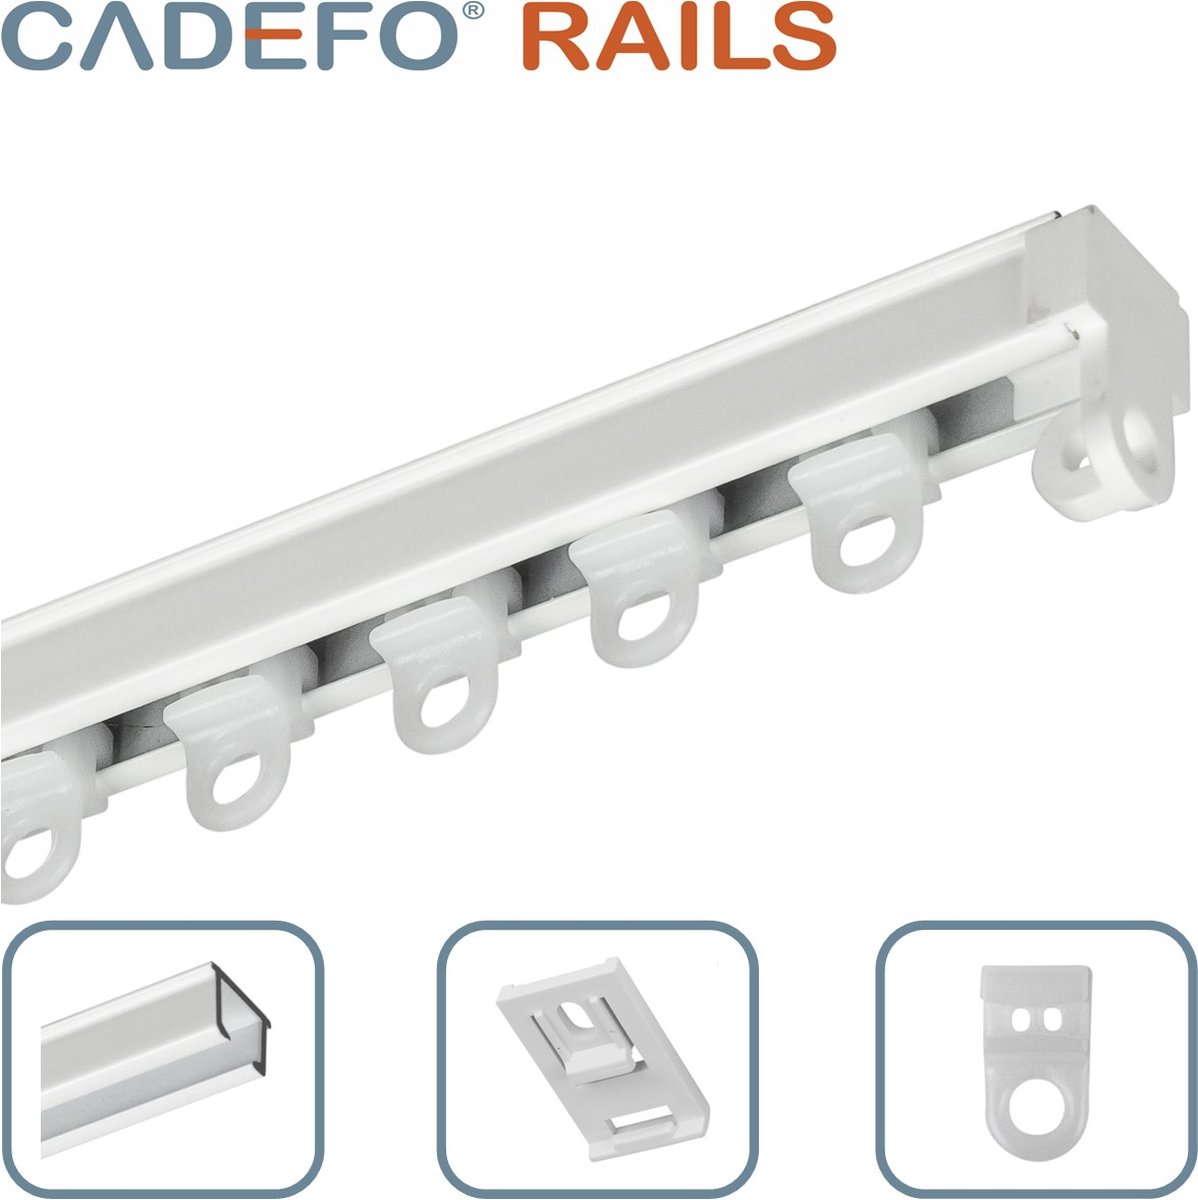 CADEFO RAILS (451 - 500 cm) Gordijnrails - Compleet op maat! - UIT 1 STUK - Leverbaar tot 6 meter - Plafondbevestiging - Lengte 499 cm